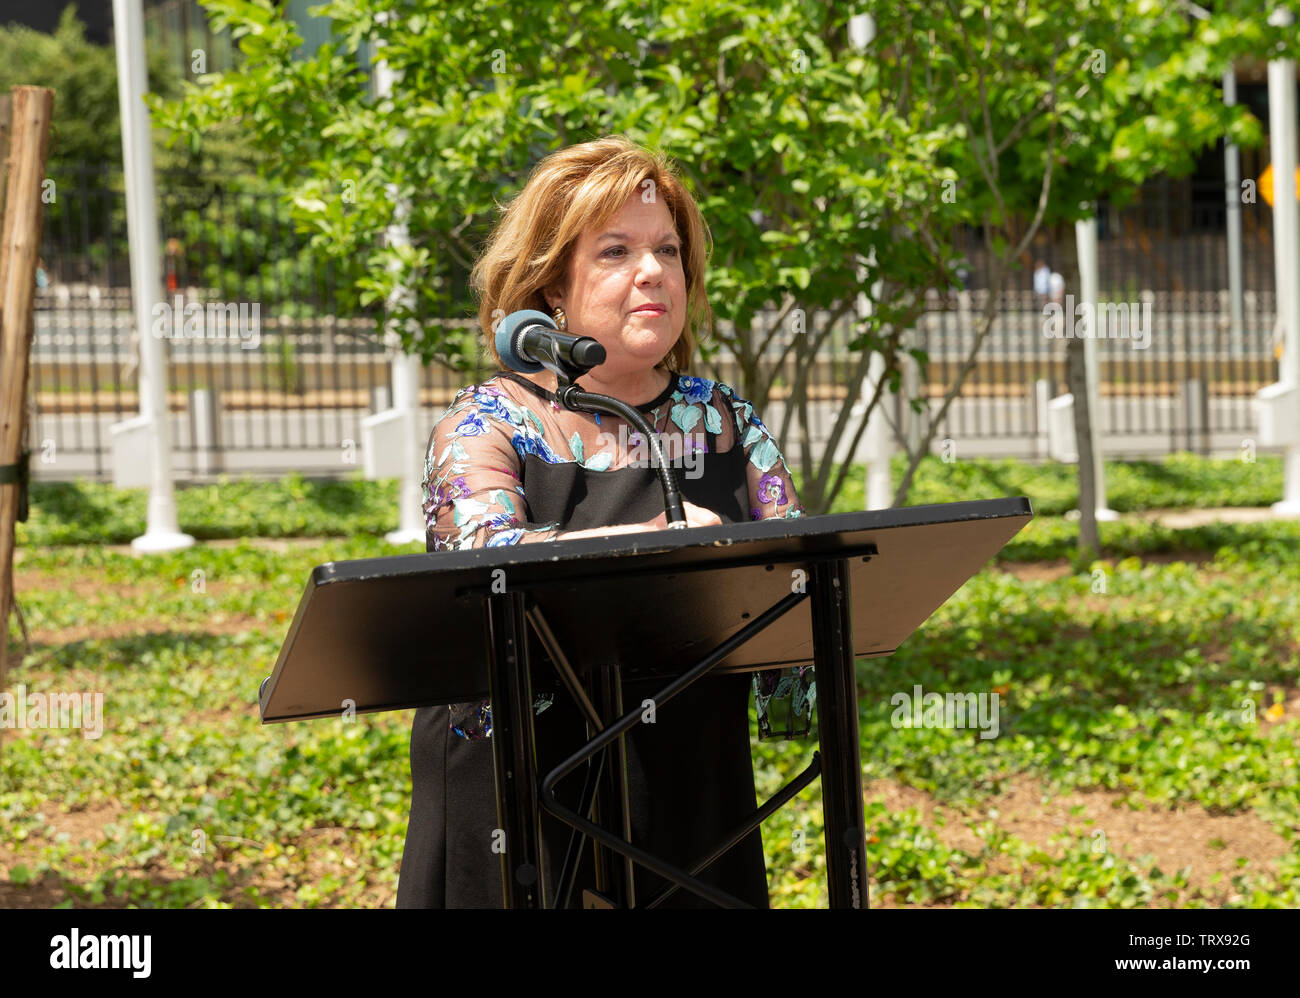 New York, NY - 12 juin 2019 : Sharon Douglas parle lors de la cérémonie de dédicace d'un jeune arbre pour commémorer l'héritage de Anne Frank et les six millions de tués pendant l'Holocauste au Siège de l'ONU Banque D'Images